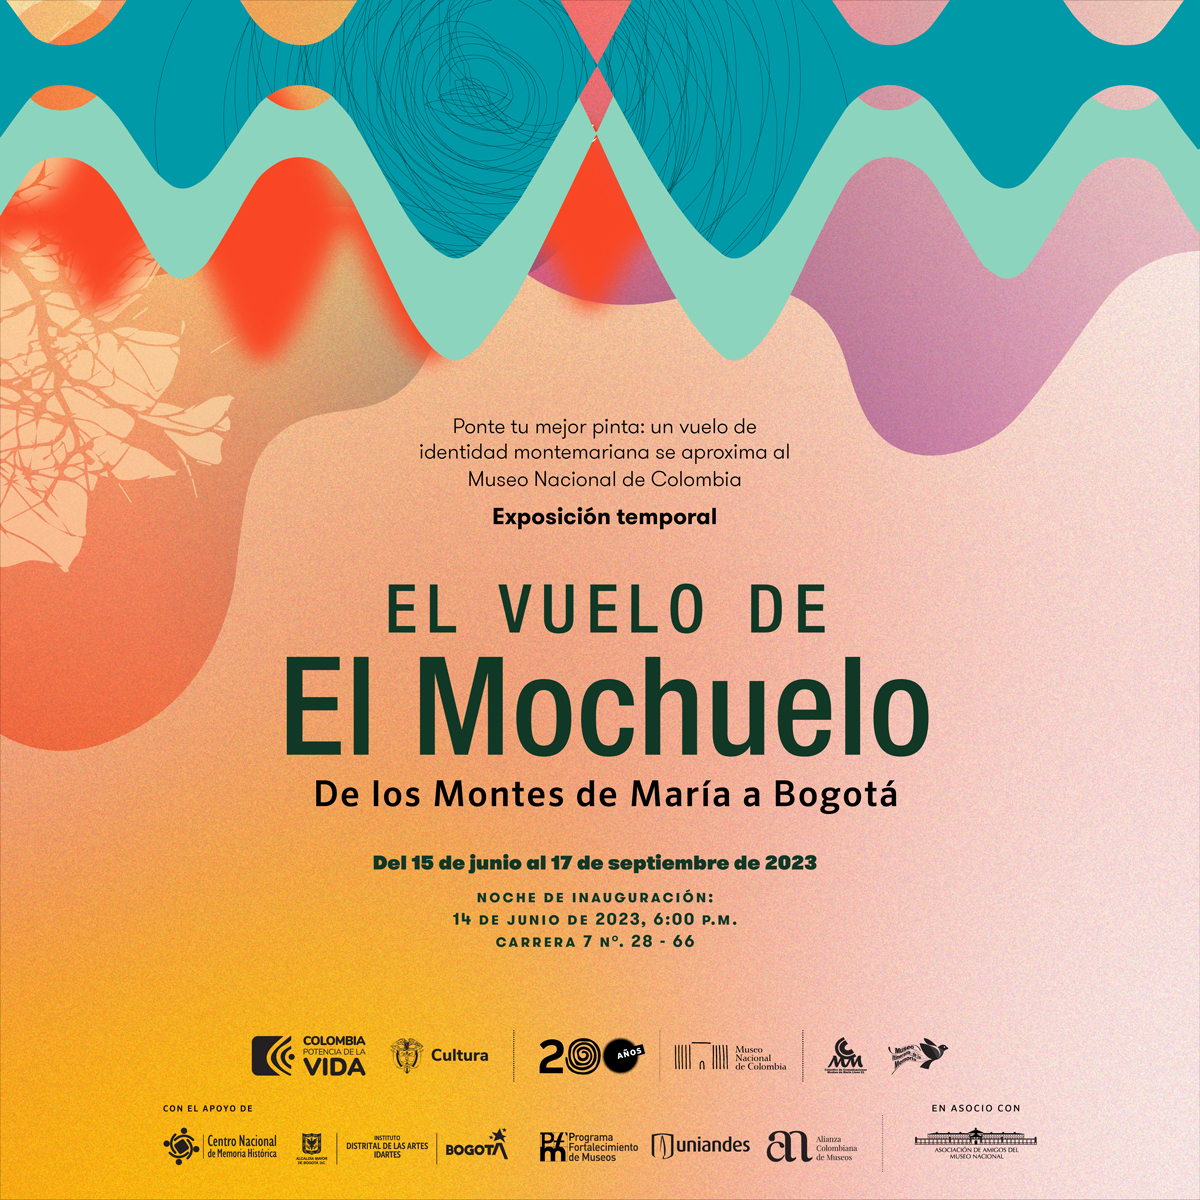 El Museo Nacional de Colombia conmemora sus 200 años invitando a su sala de exposiciones al Museo Itinerante de la Memoria y la Identidad de los Montes de María ‘El Mochuelo’, del 15 de junio al 17 de septiembre de 2023